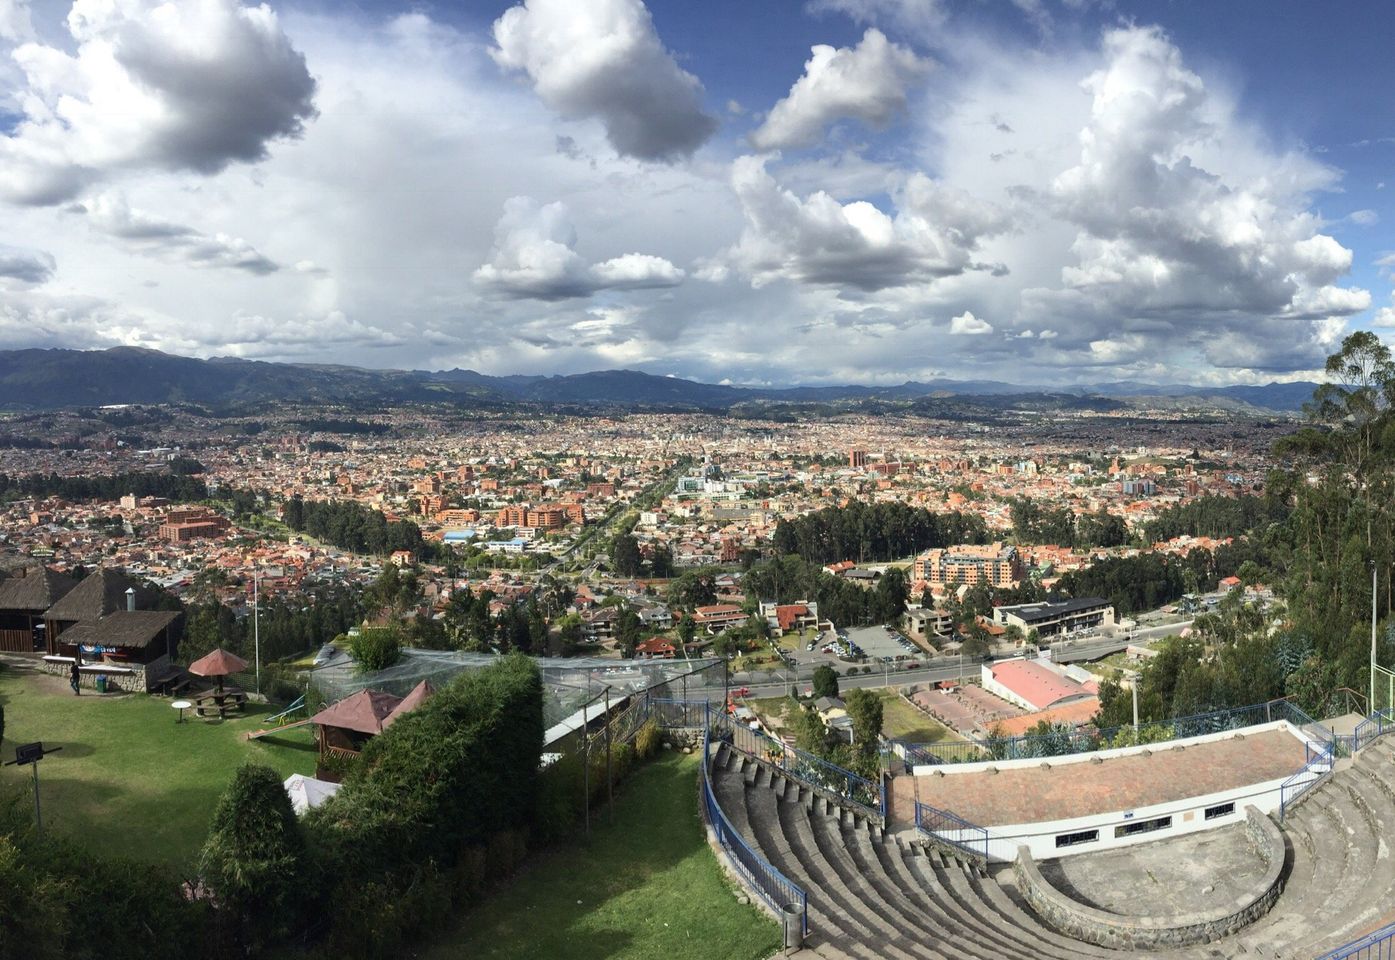 Ervaar adembenemende uitzichten op Mirador de Turi, het best bewaarde geheim van Cuenca.